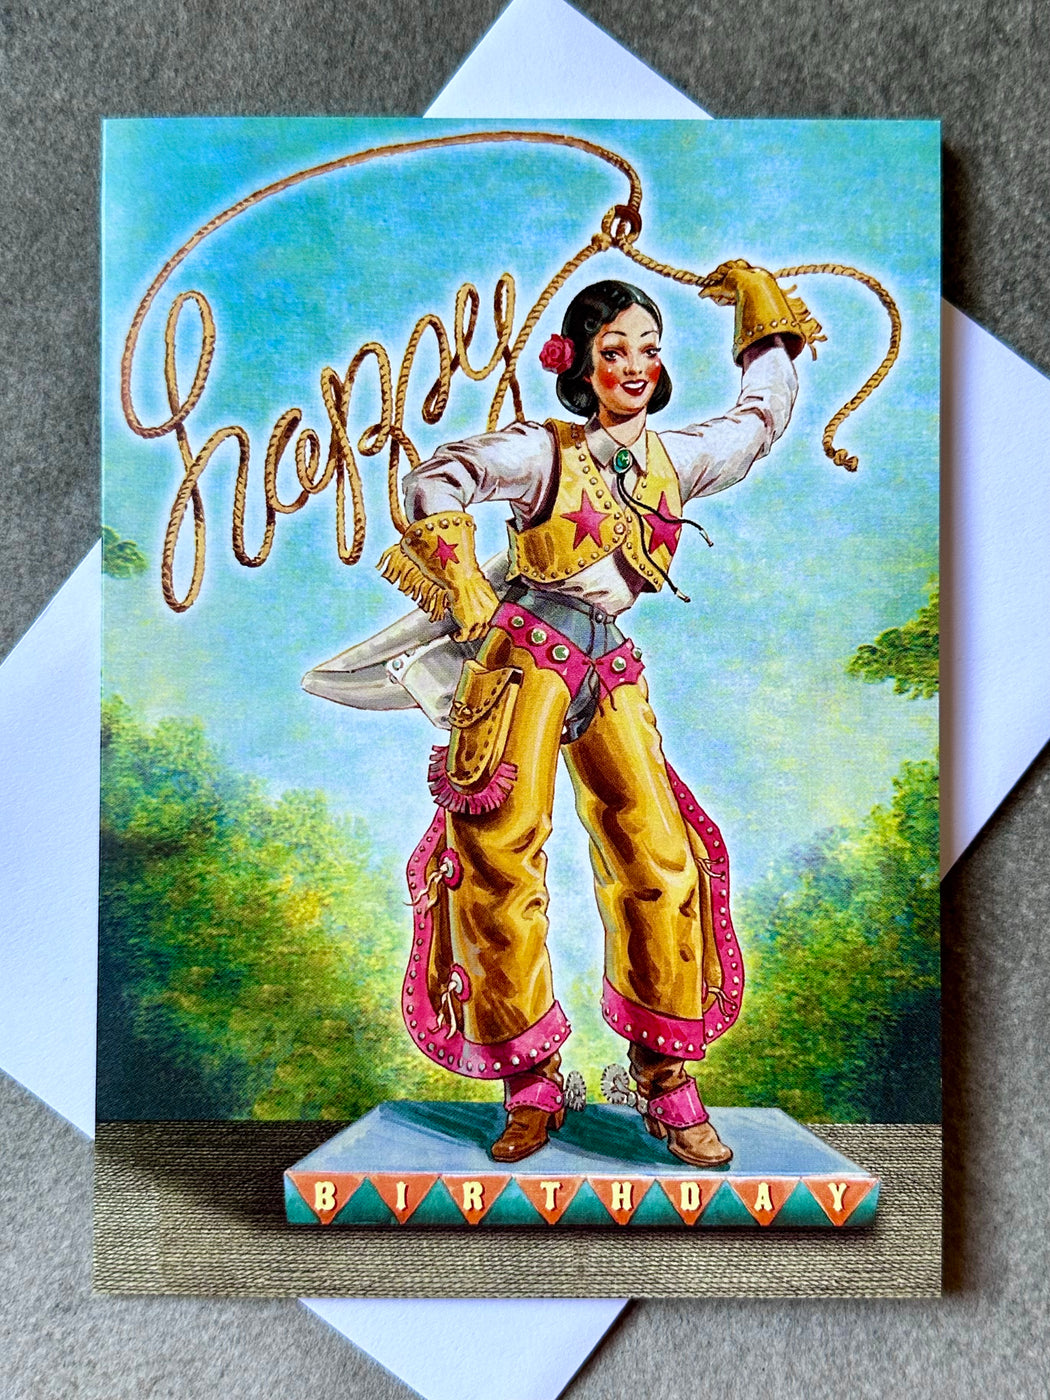 "Cowgirl" Birthday Card